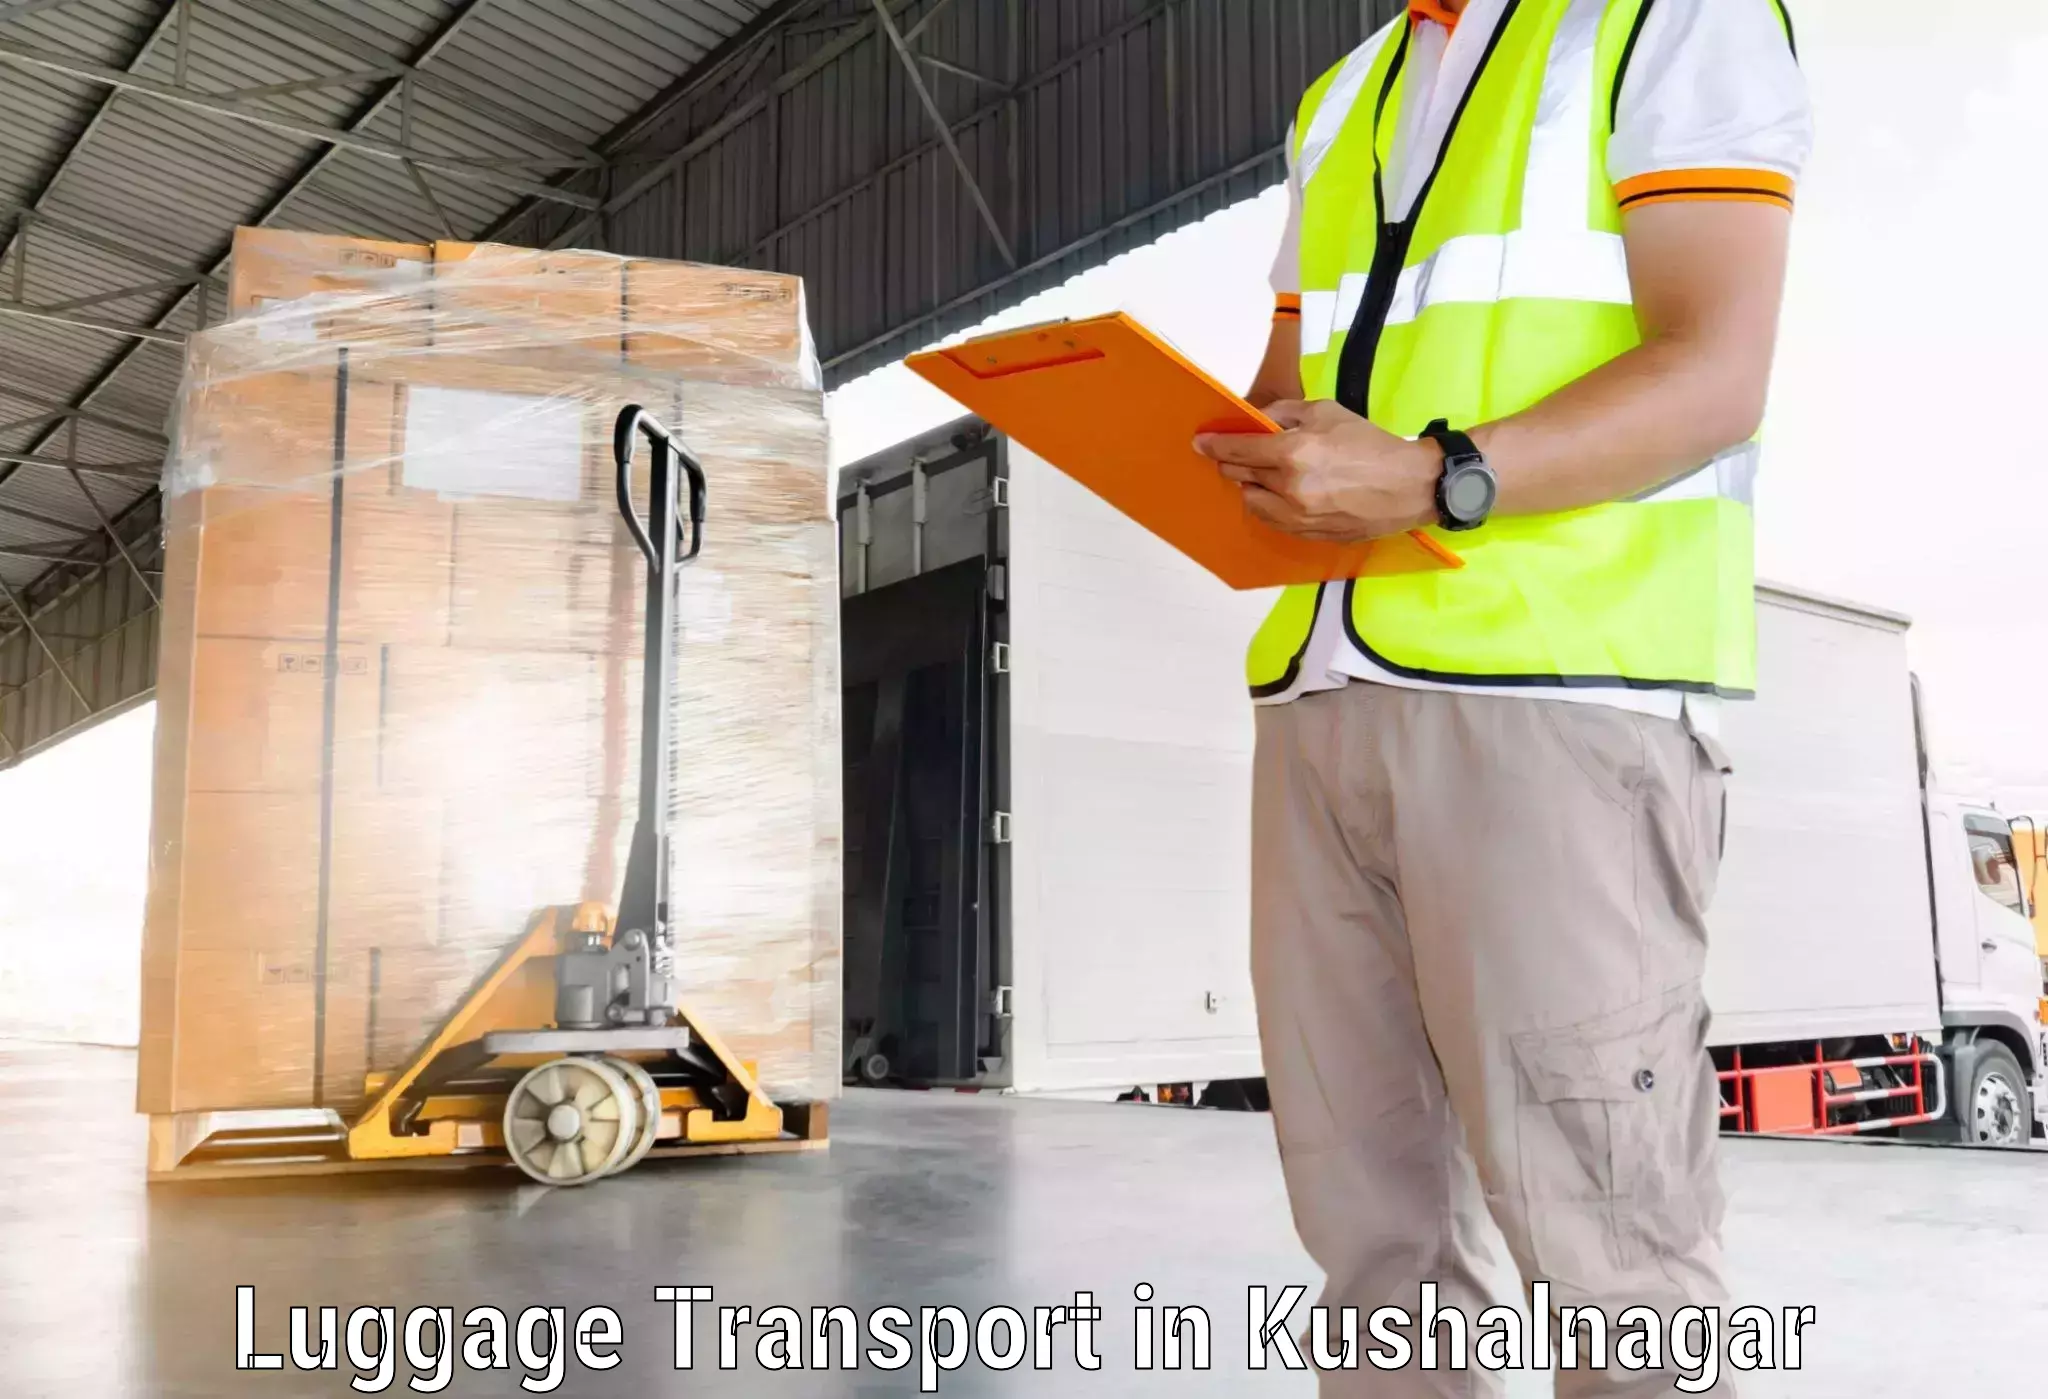 Luggage shipping estimate in Kushalnagar